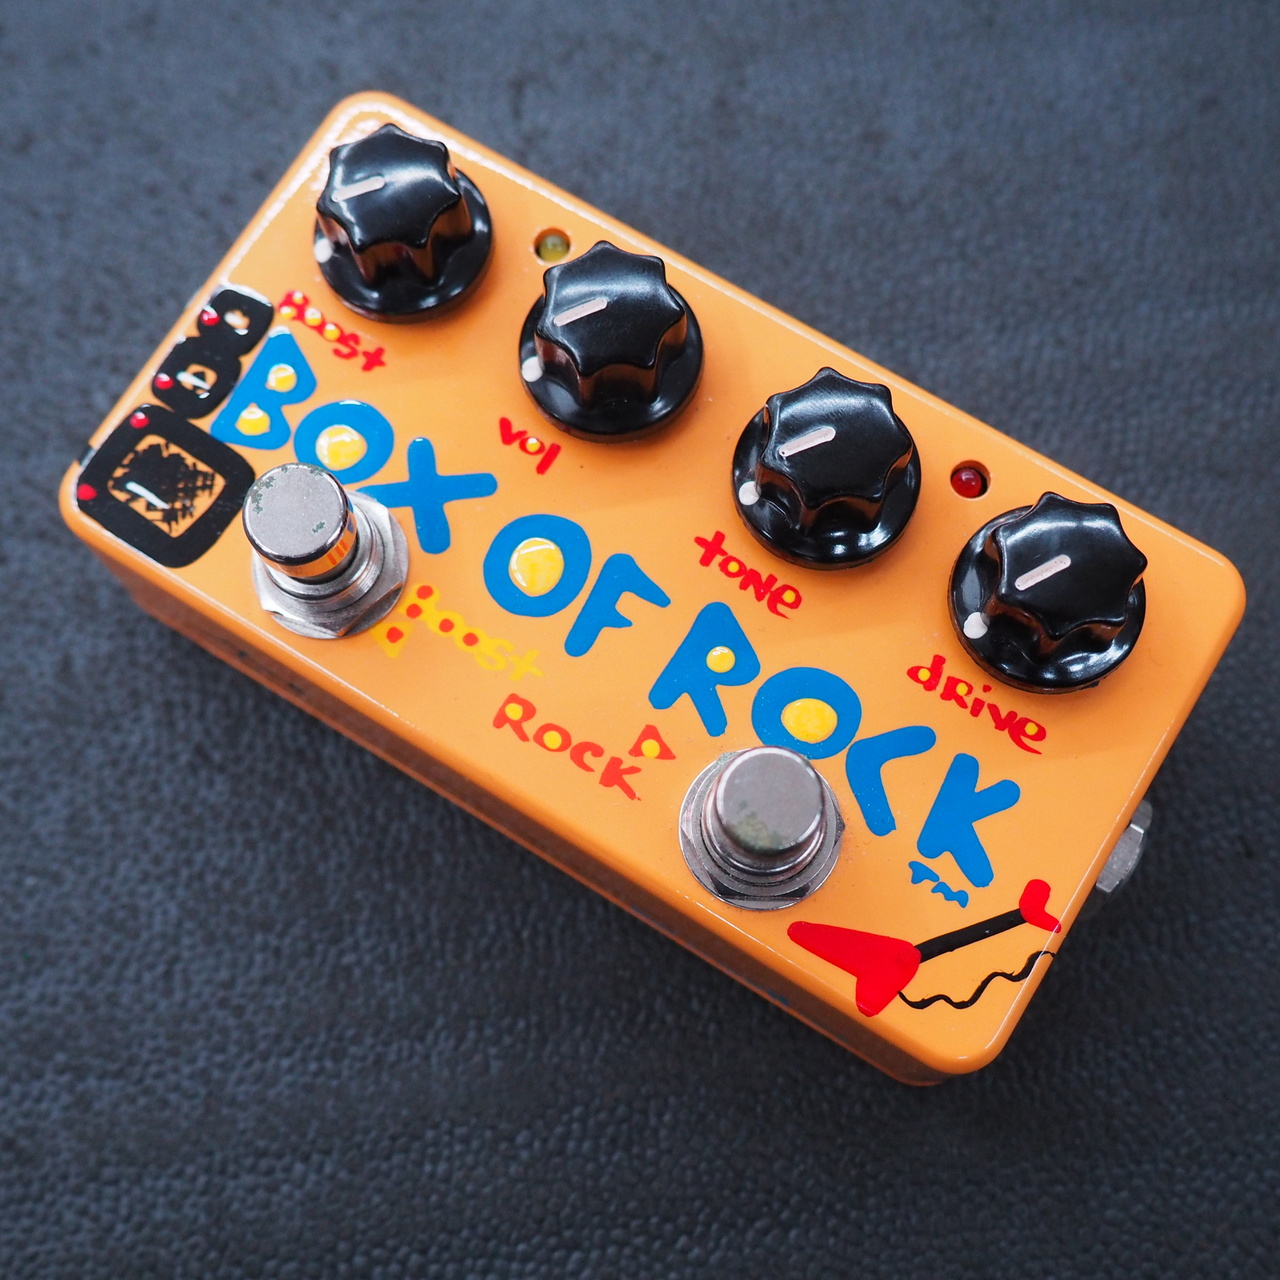 定価販売 [限定価格] Z.VEX Box of ROCK | rpagrimensura.com.ar